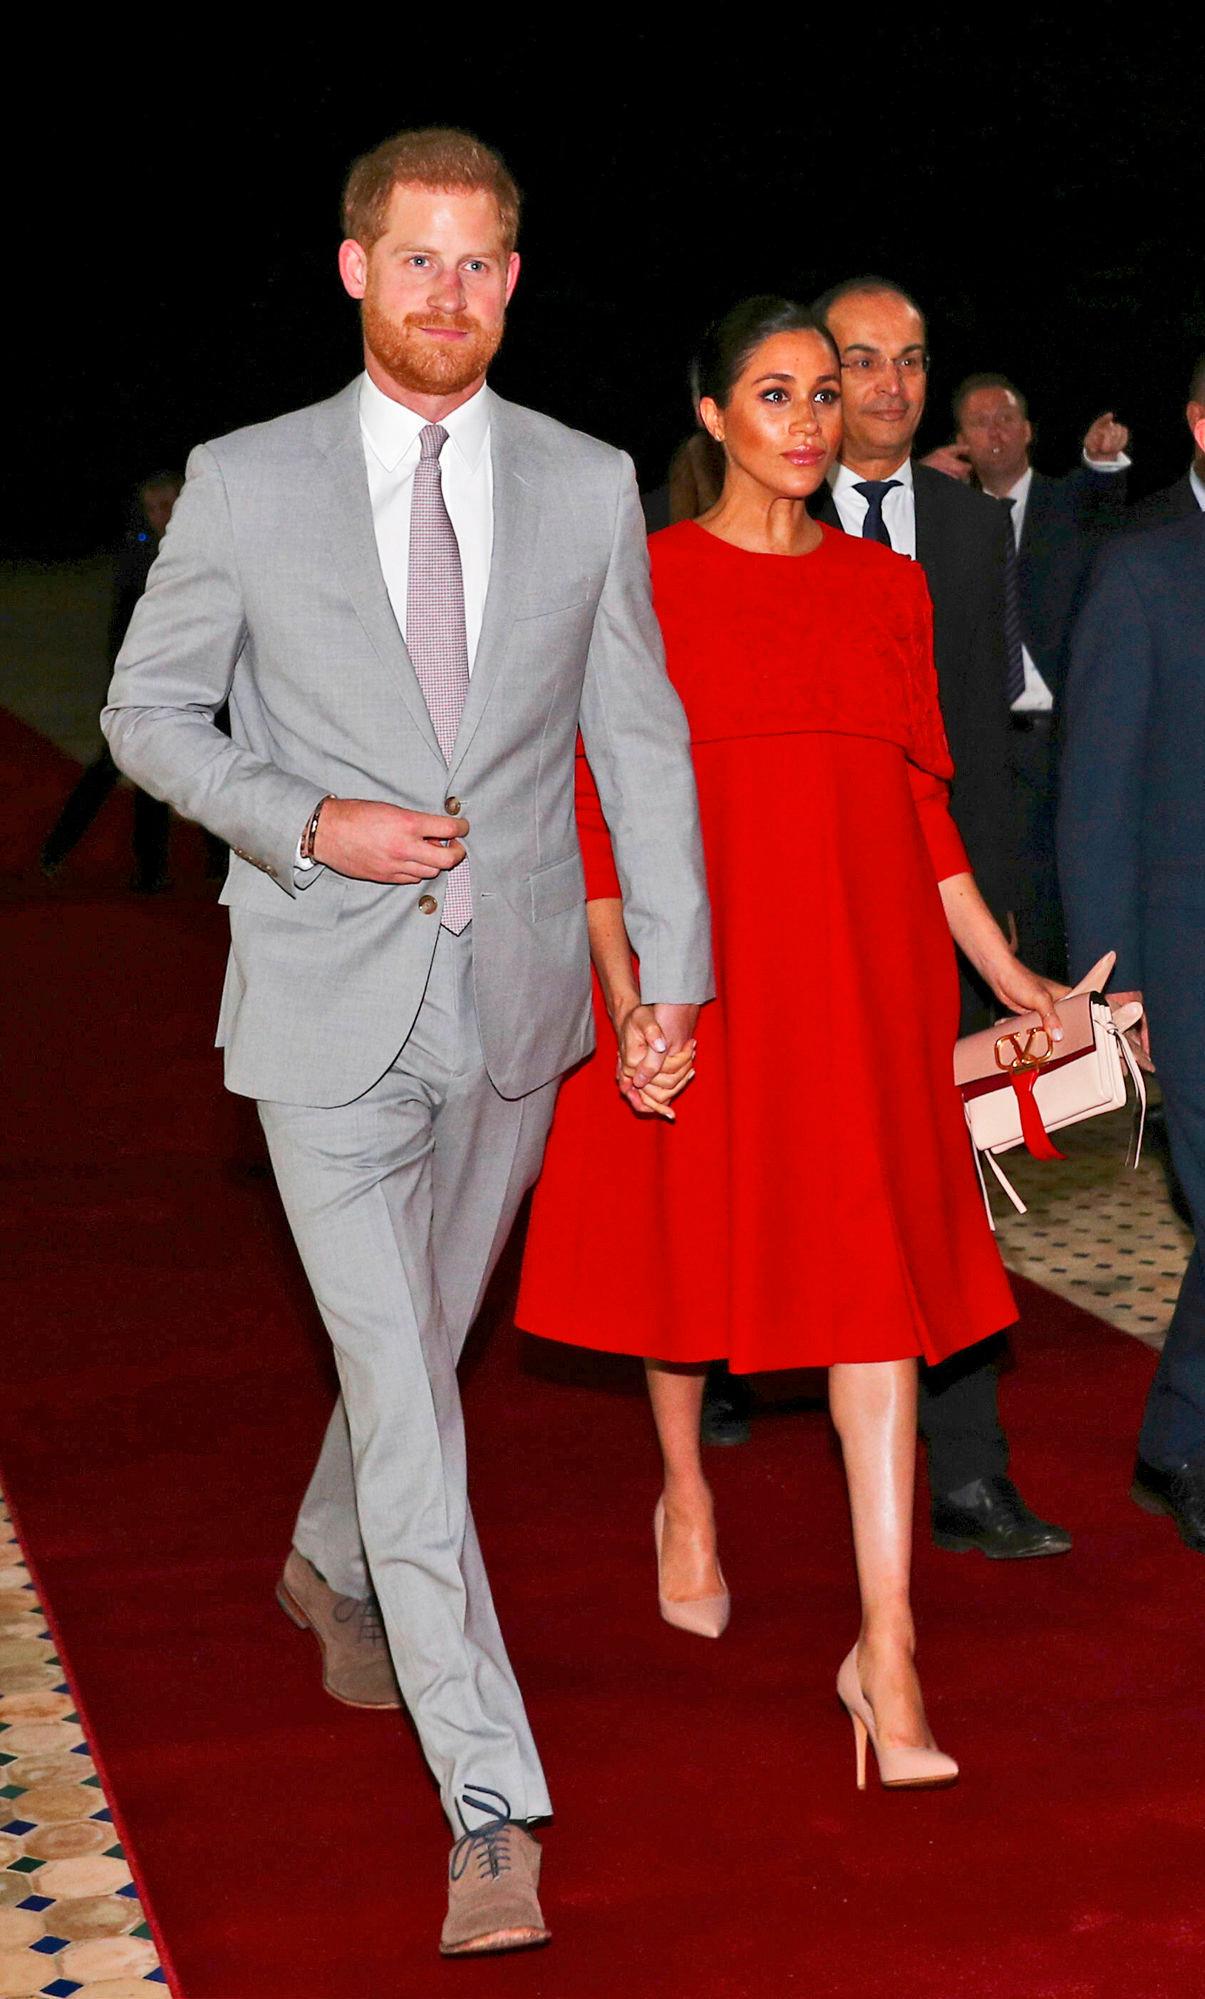 STILIG PAR: Prins Harry og hertuginne Meghan på vei til middag i Casablanca. Prinsen hadde lysegrå dress mens hertuginnen hadde knallrød kjole. Foto: AP.